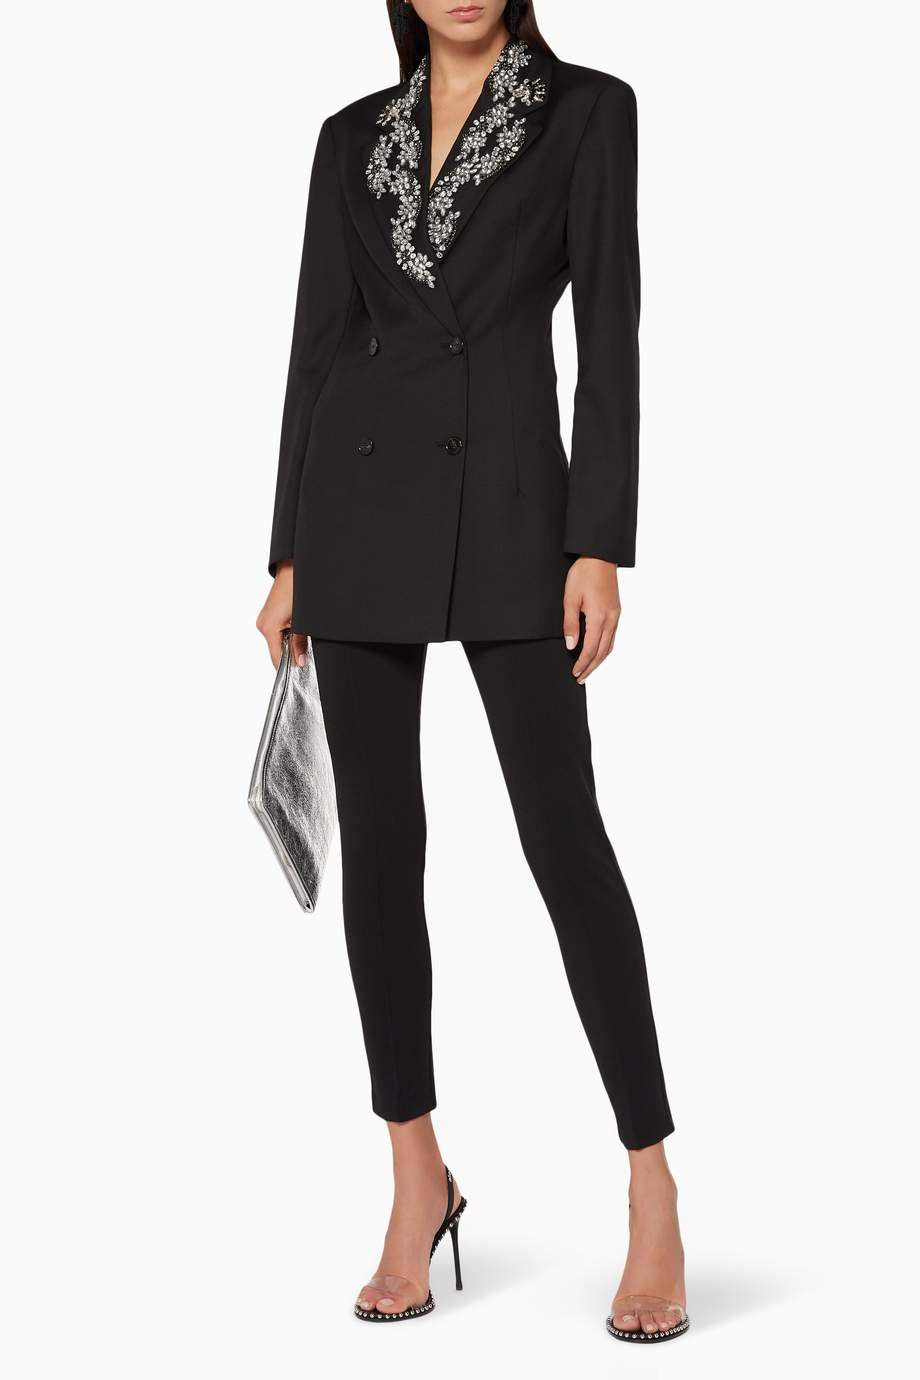 Shop Rotate Black Black Crystal-Embellished Gabardine Blazer for Women ...